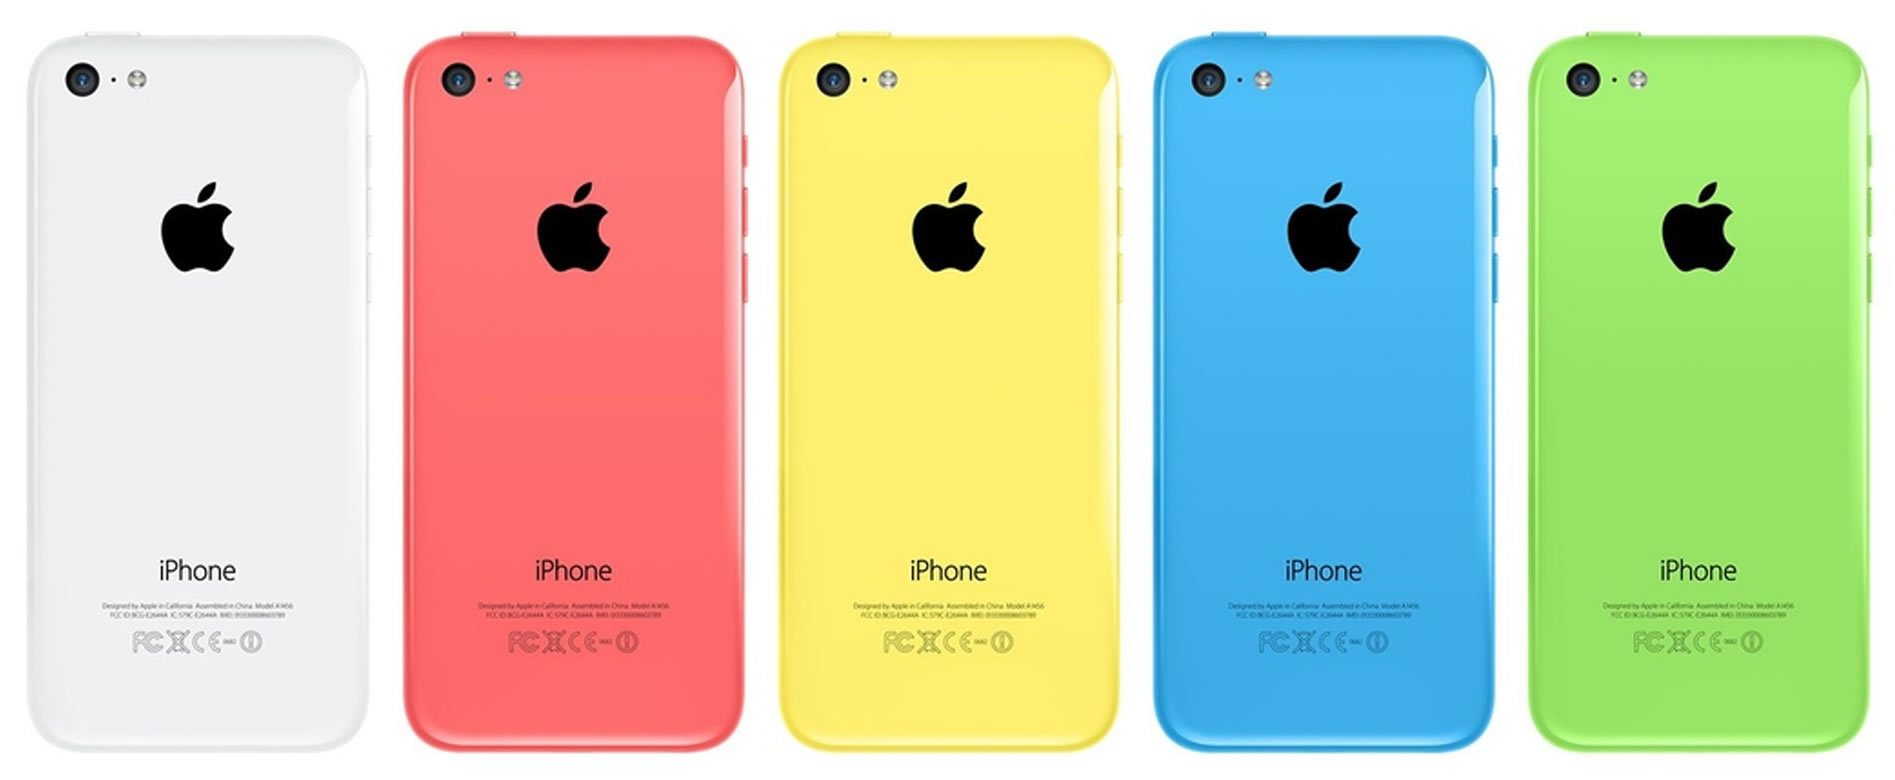 LCD ekranlı iPhone mavi, pembe ve sarı renk seçeneğiyle gelebilir